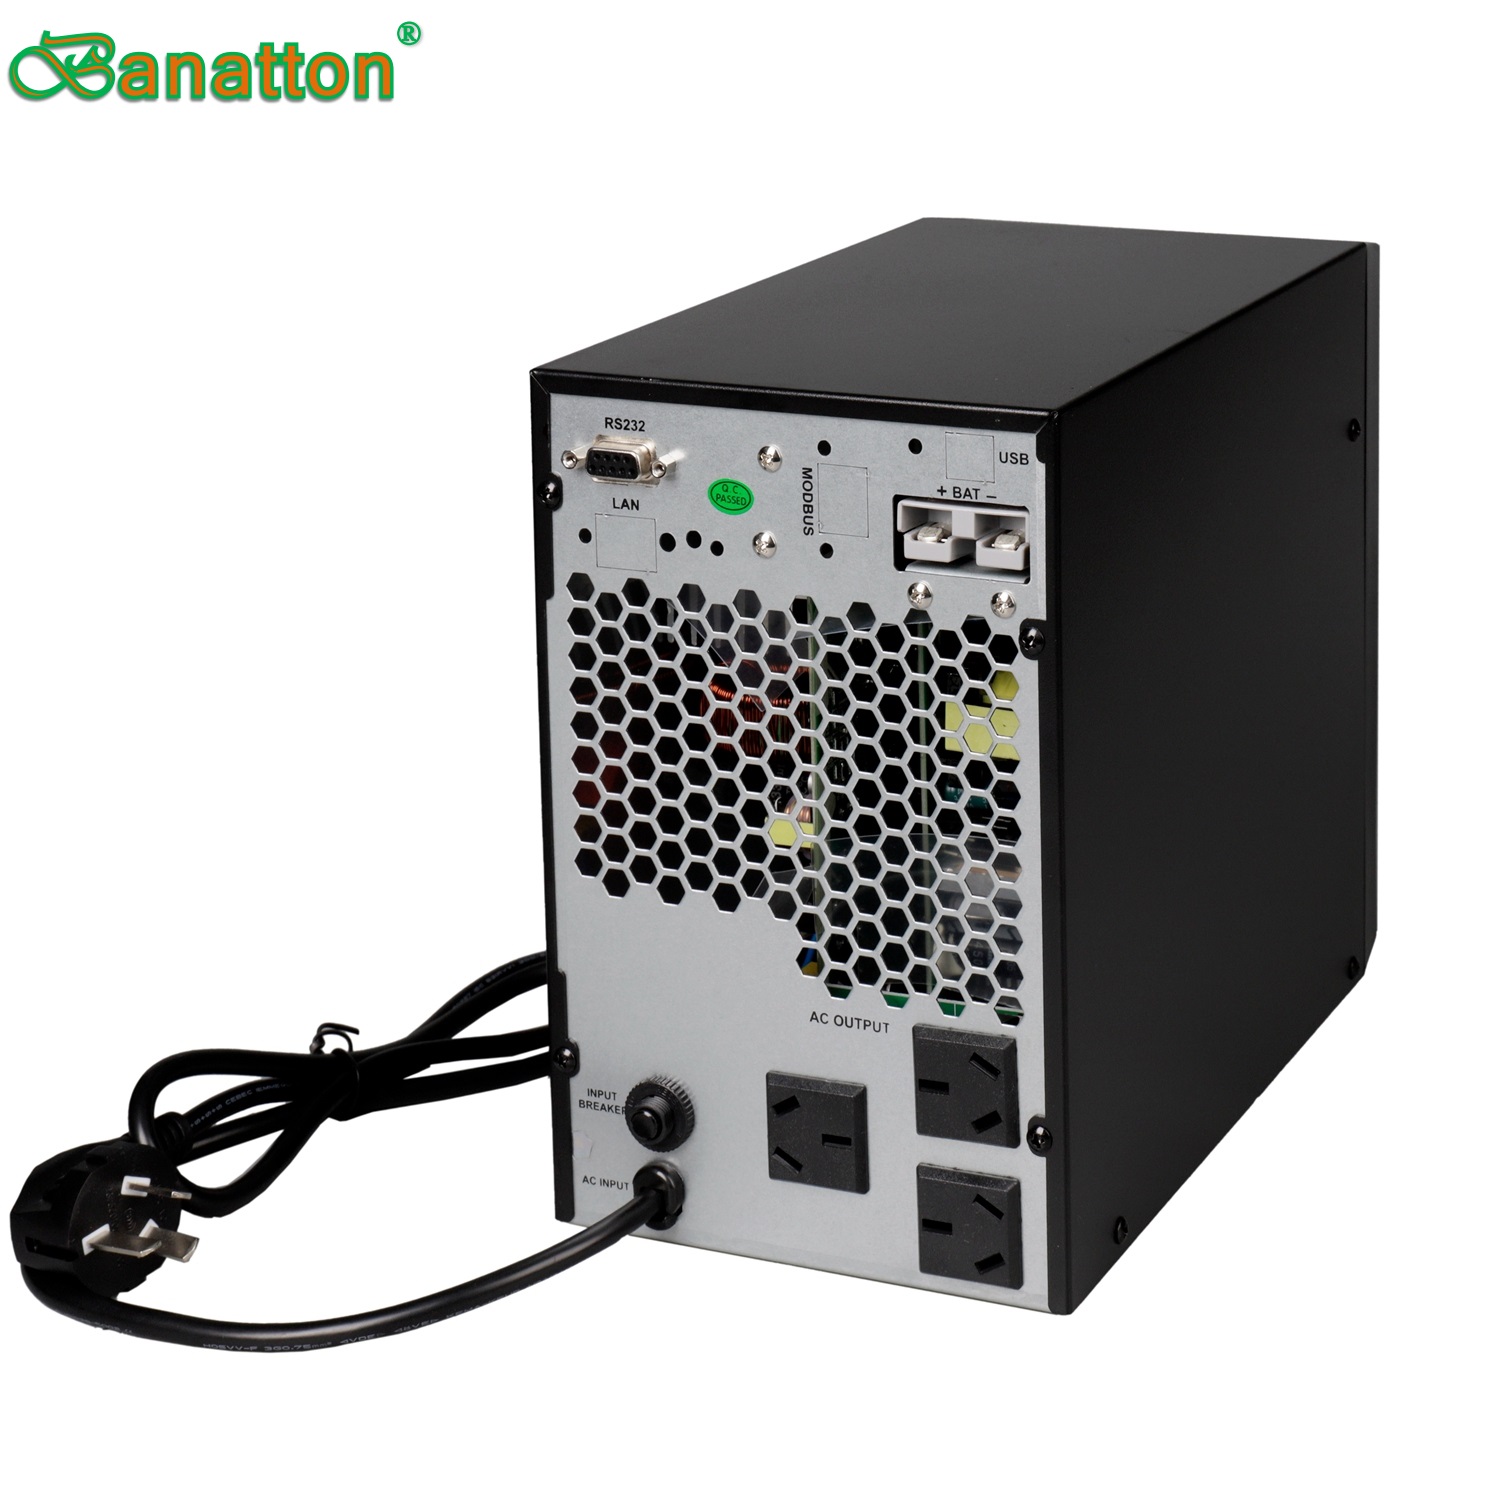 Banatton 1~3K-Li Online UPS Li-ion Battery 220V/230V/240V PF0.9 IEC62040 Uninterrupted Power Supply